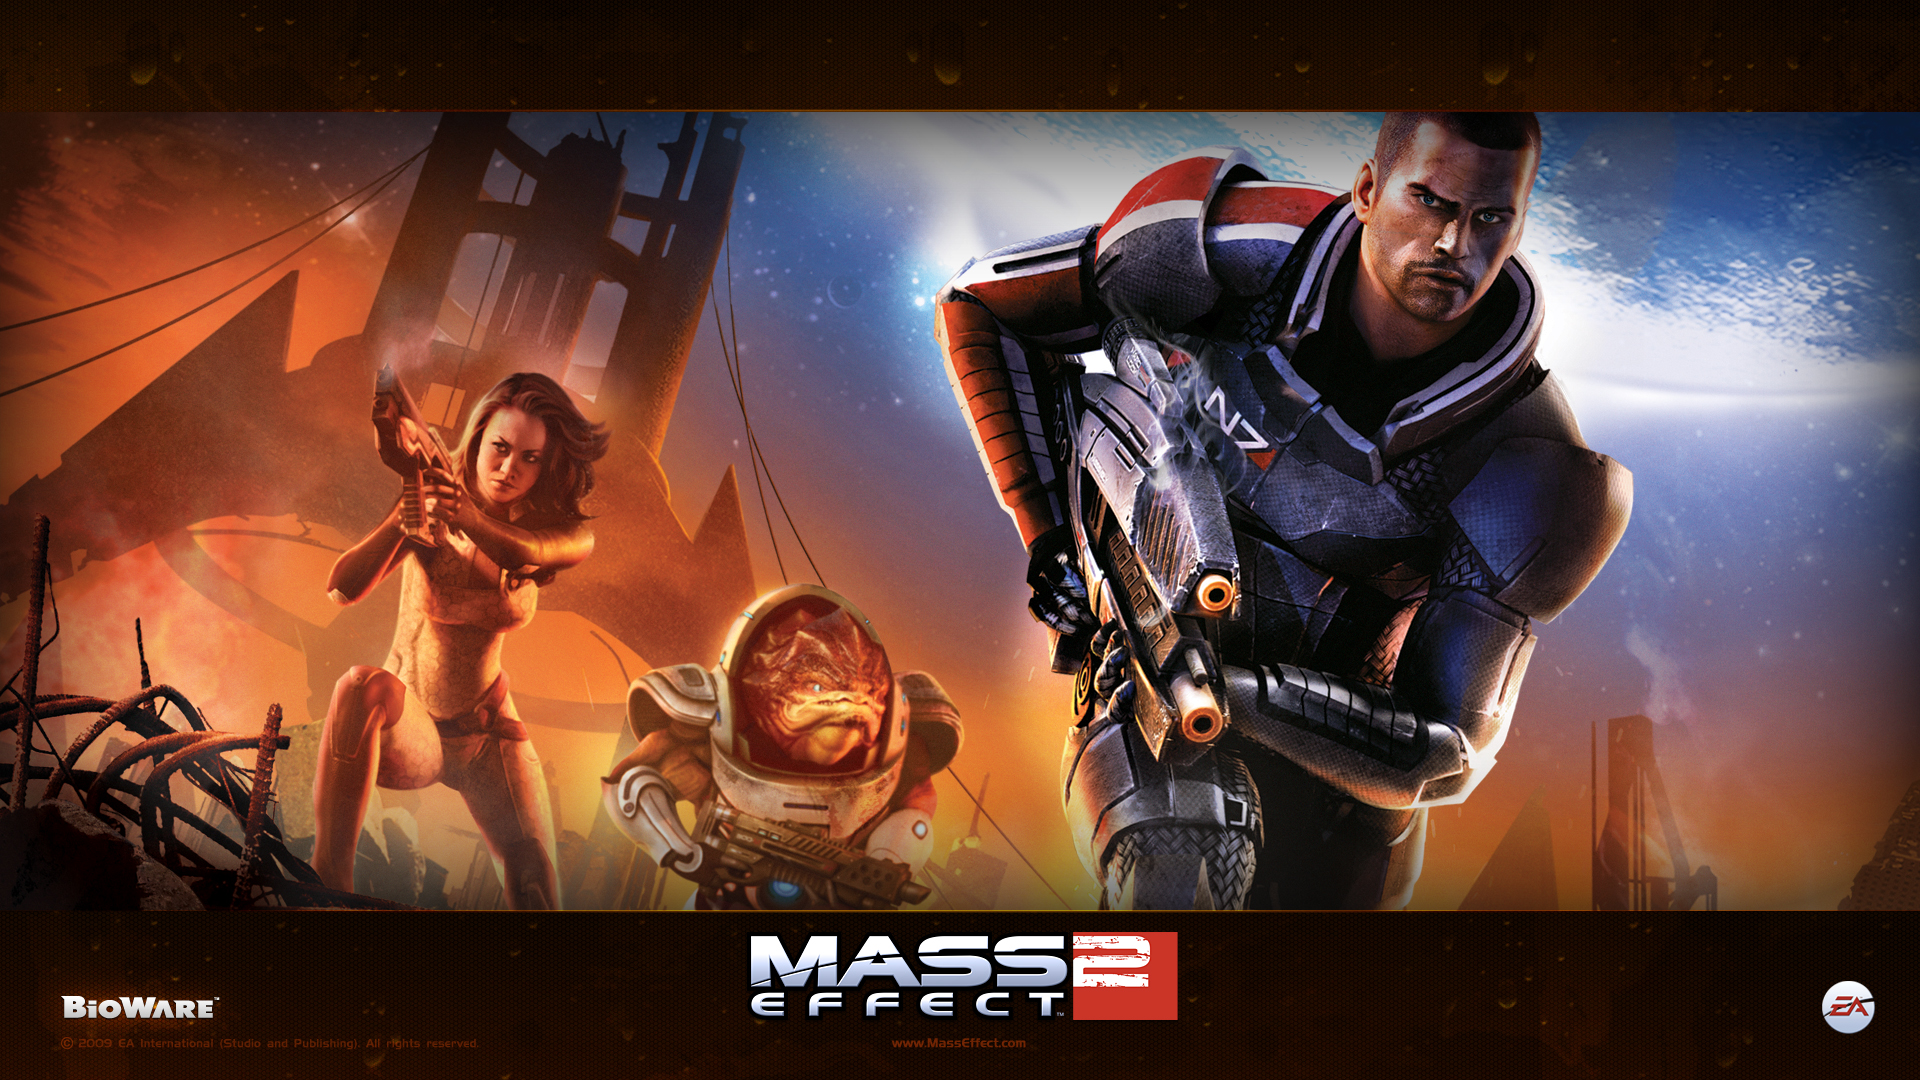 High Resolution Wallpaper | Mass Effect 2 1920x1080 px